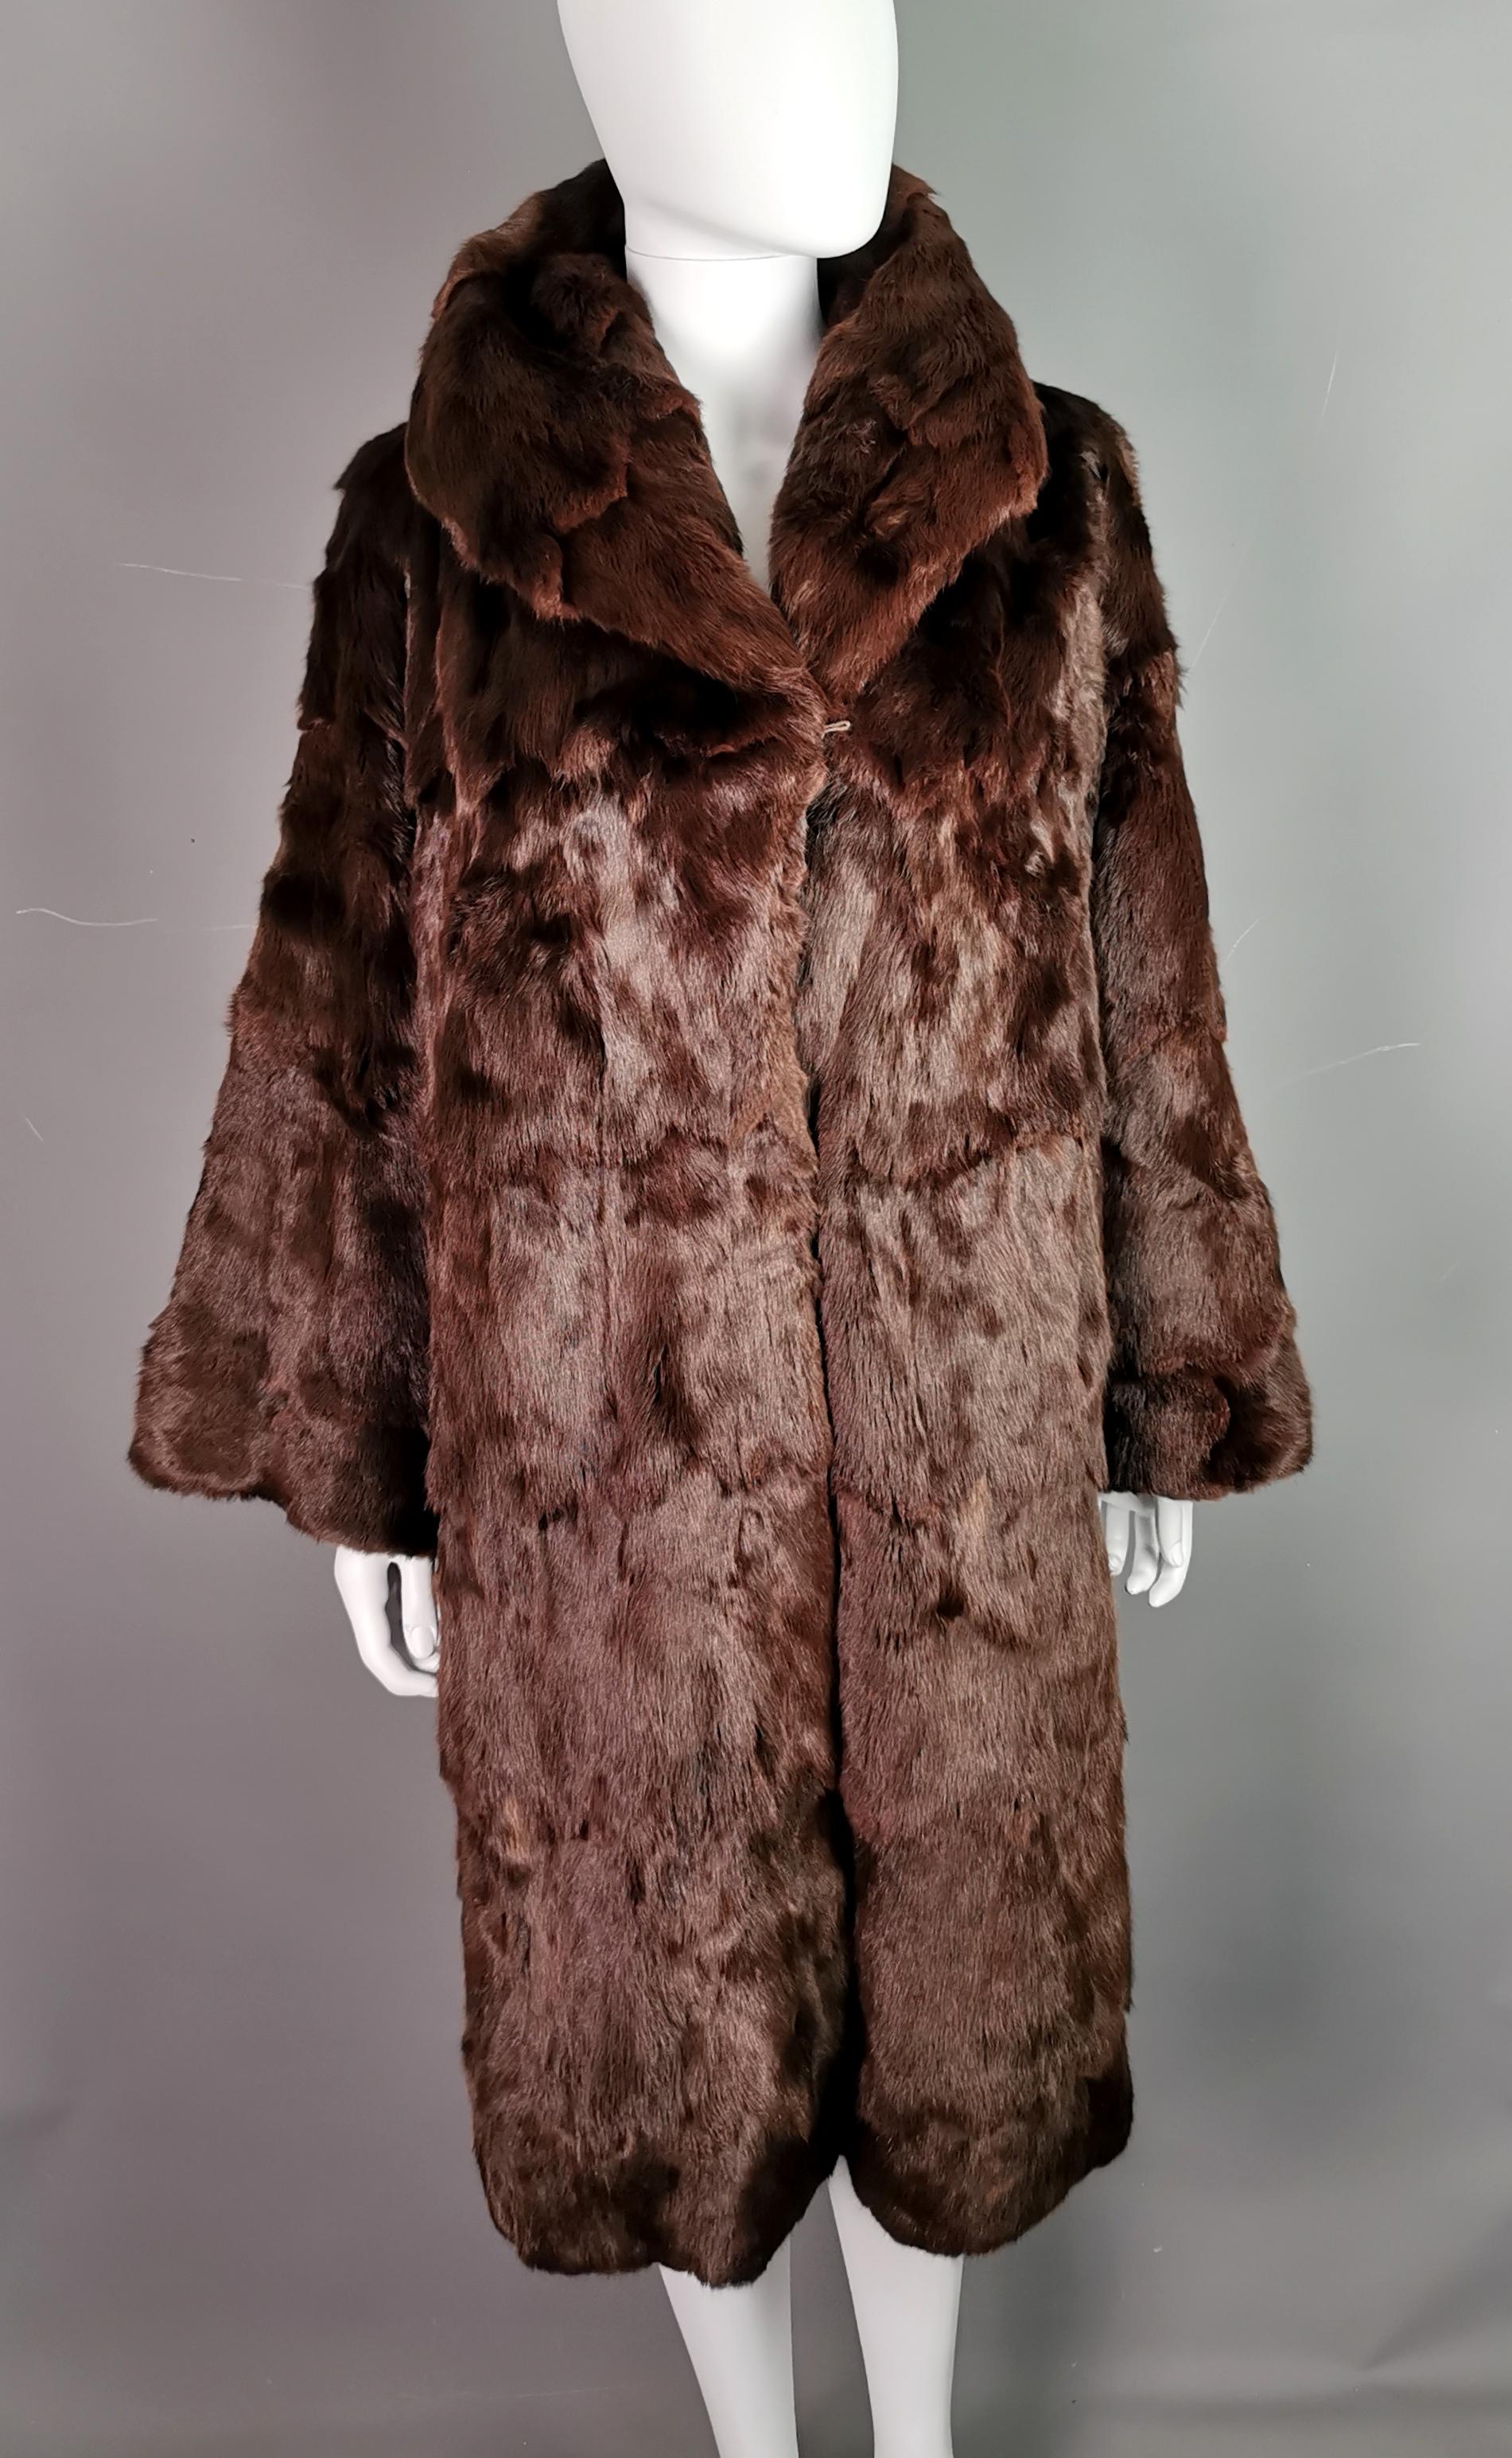 Un très beau manteau vintage de haute qualité en fourrure de vison.

Il est fabriqué en fourrure de vison brun acajou, superbement douce, et doublé d'un satin brun chocolat.

Il possède un joli col large avec un empiècement plus long et de larges